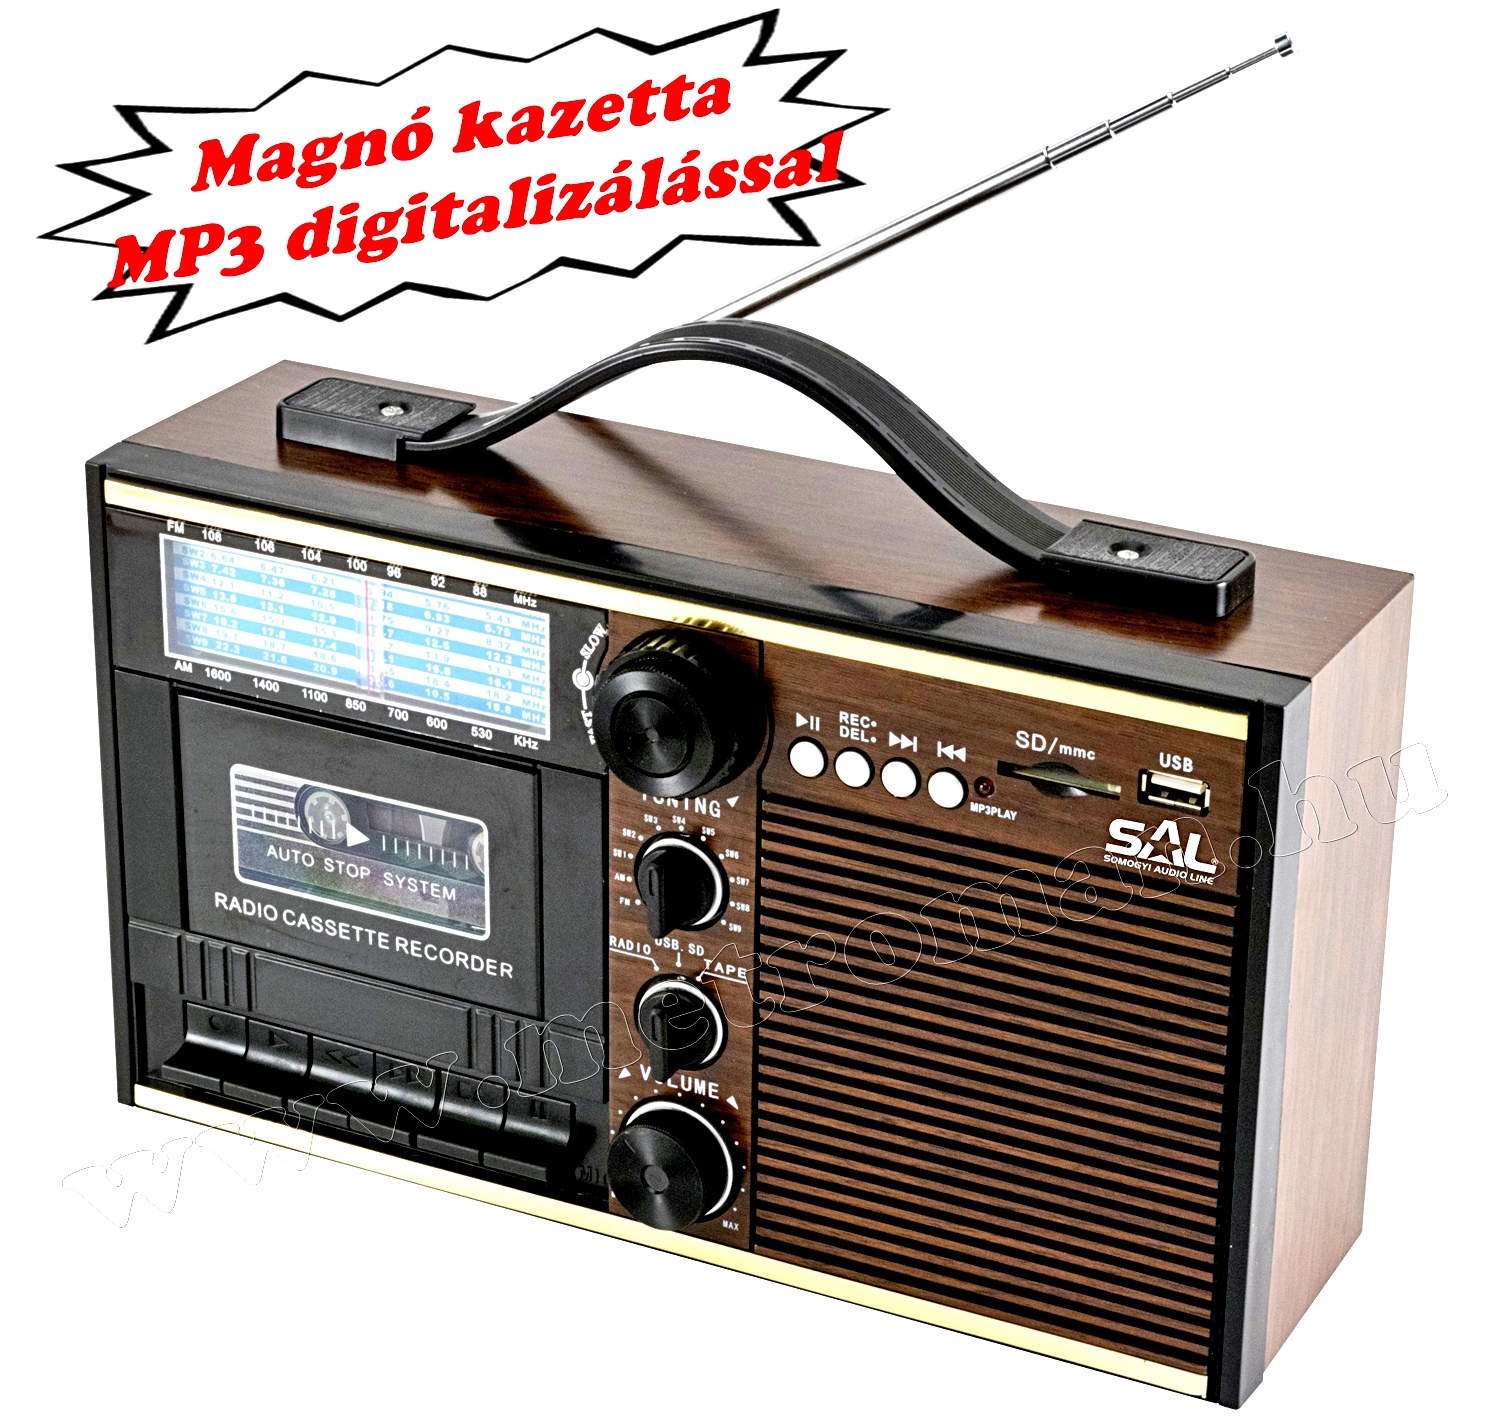 Retro táska rádió MP3 lejátszóval és kazetta digitalizálóval RRT 11B